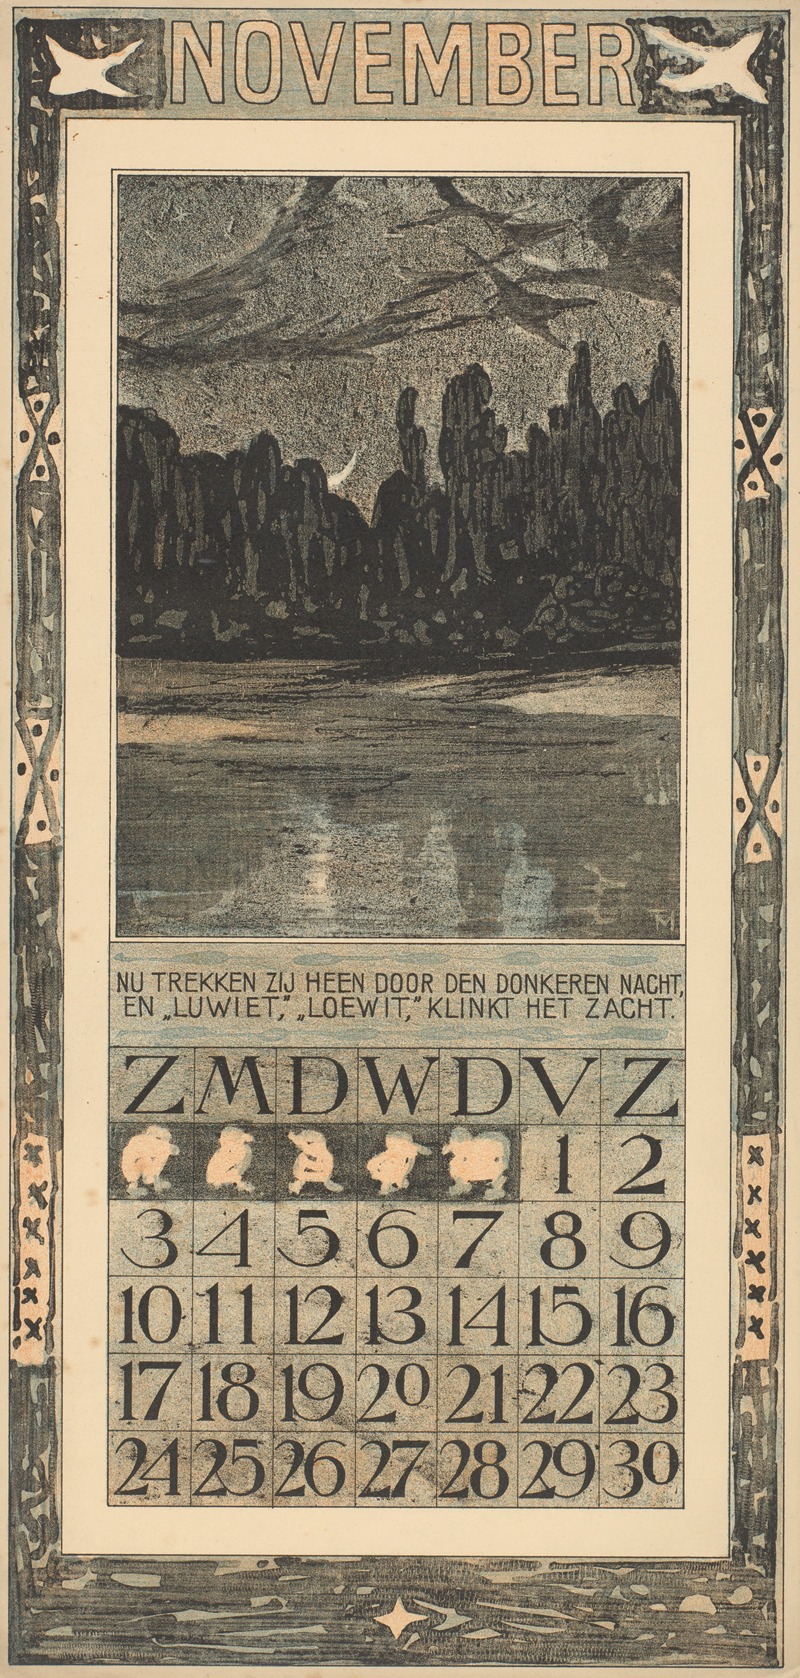 Theo van Hoytema - Kalenderblad voor november 1907 met trekvogels in een nachtlandschap